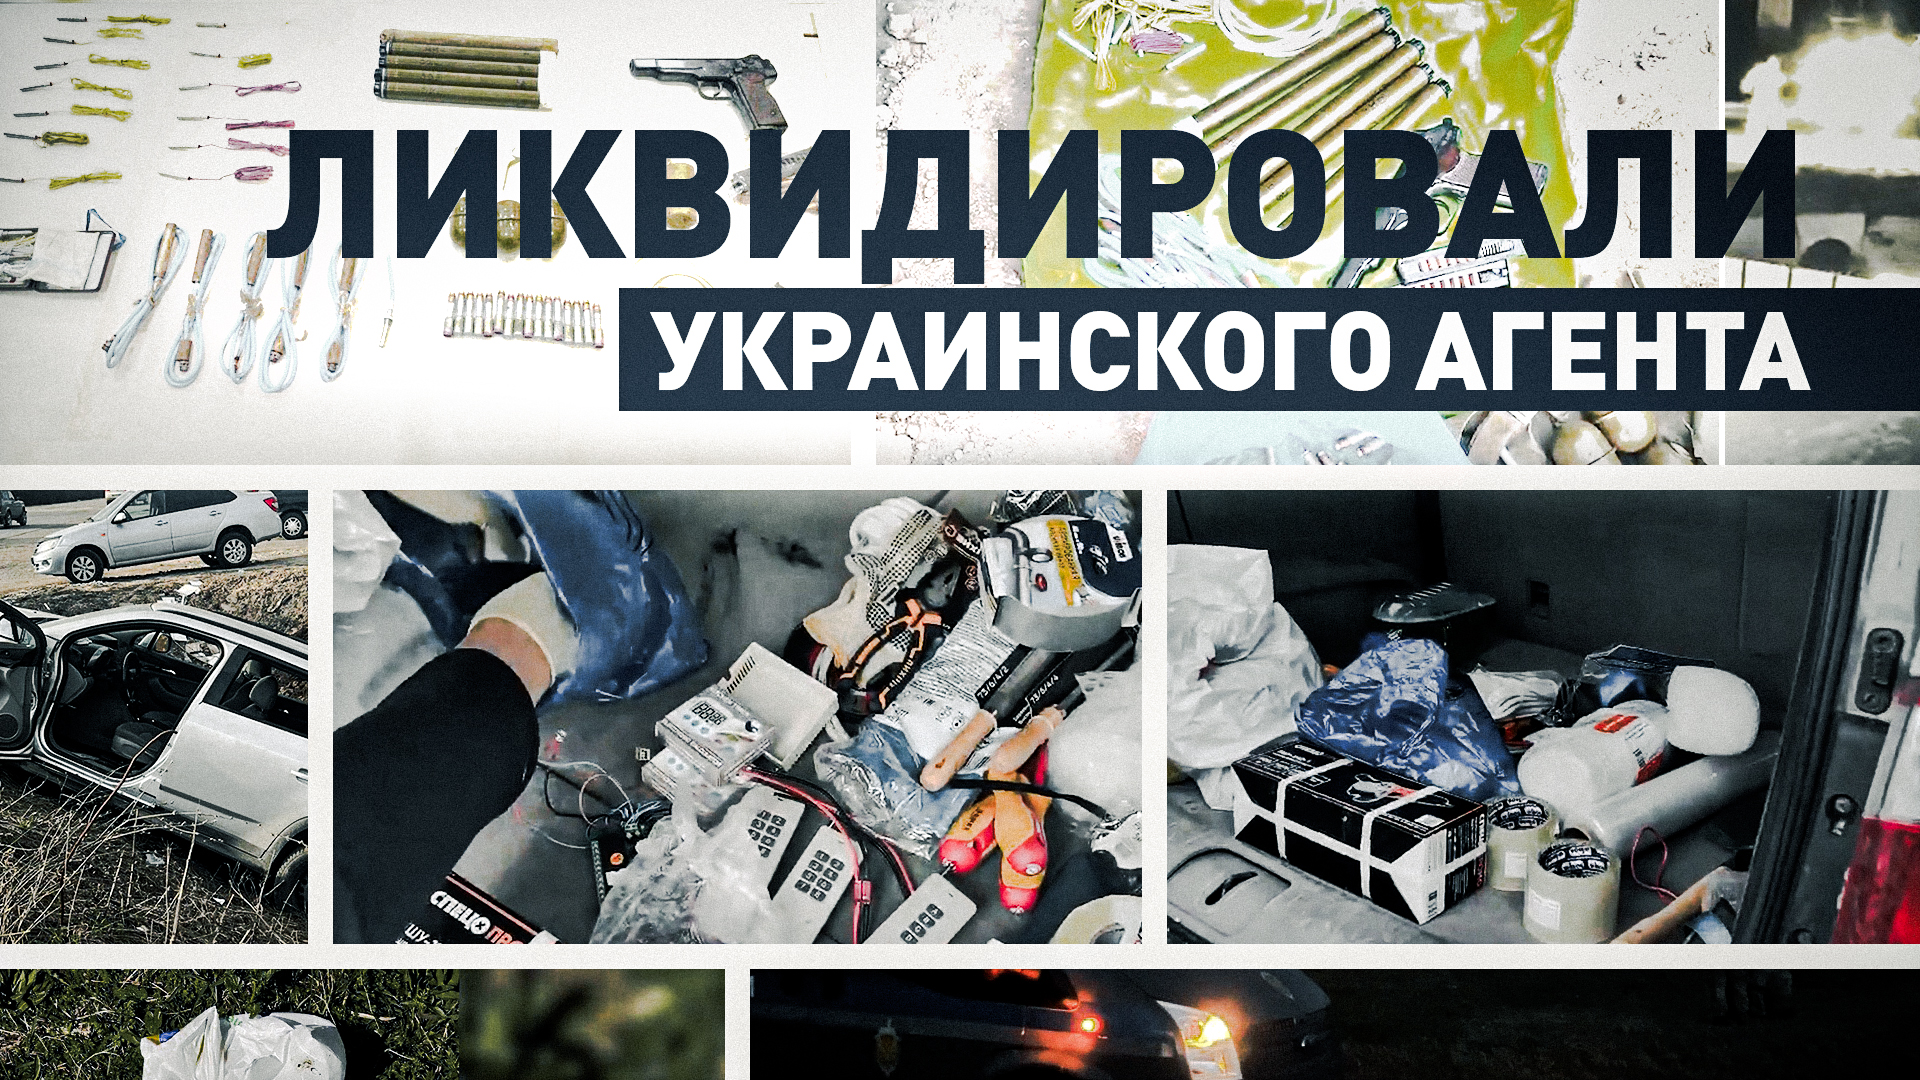 Оказал вооружённое сопротивление: ФСБ ликвидировала агента украинской военной разведки